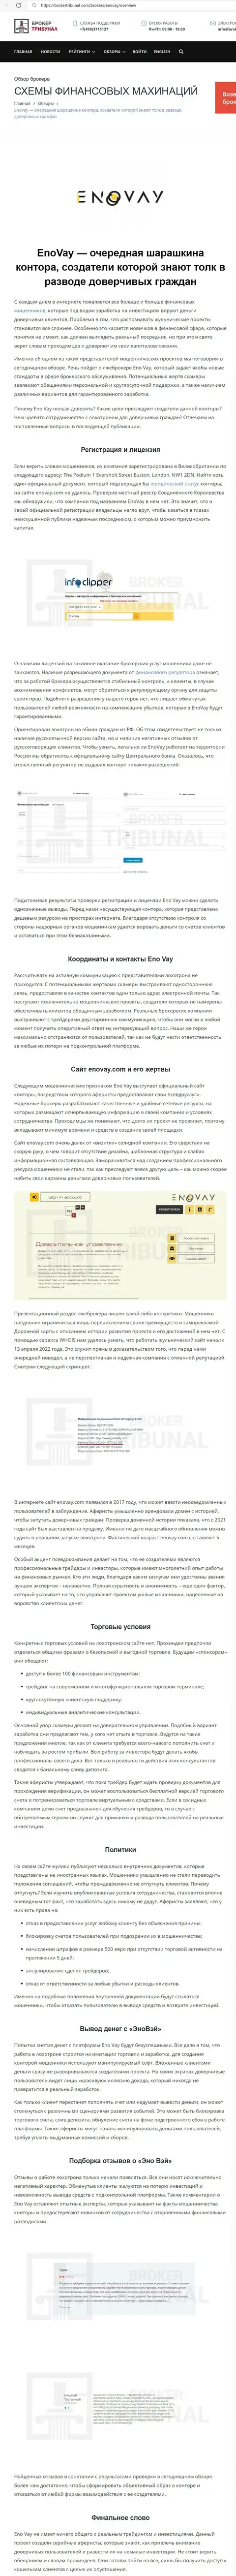 РАБОТАТЬ НЕ РЕКОМЕНДУЕМ - публикация с обзором EnoVay